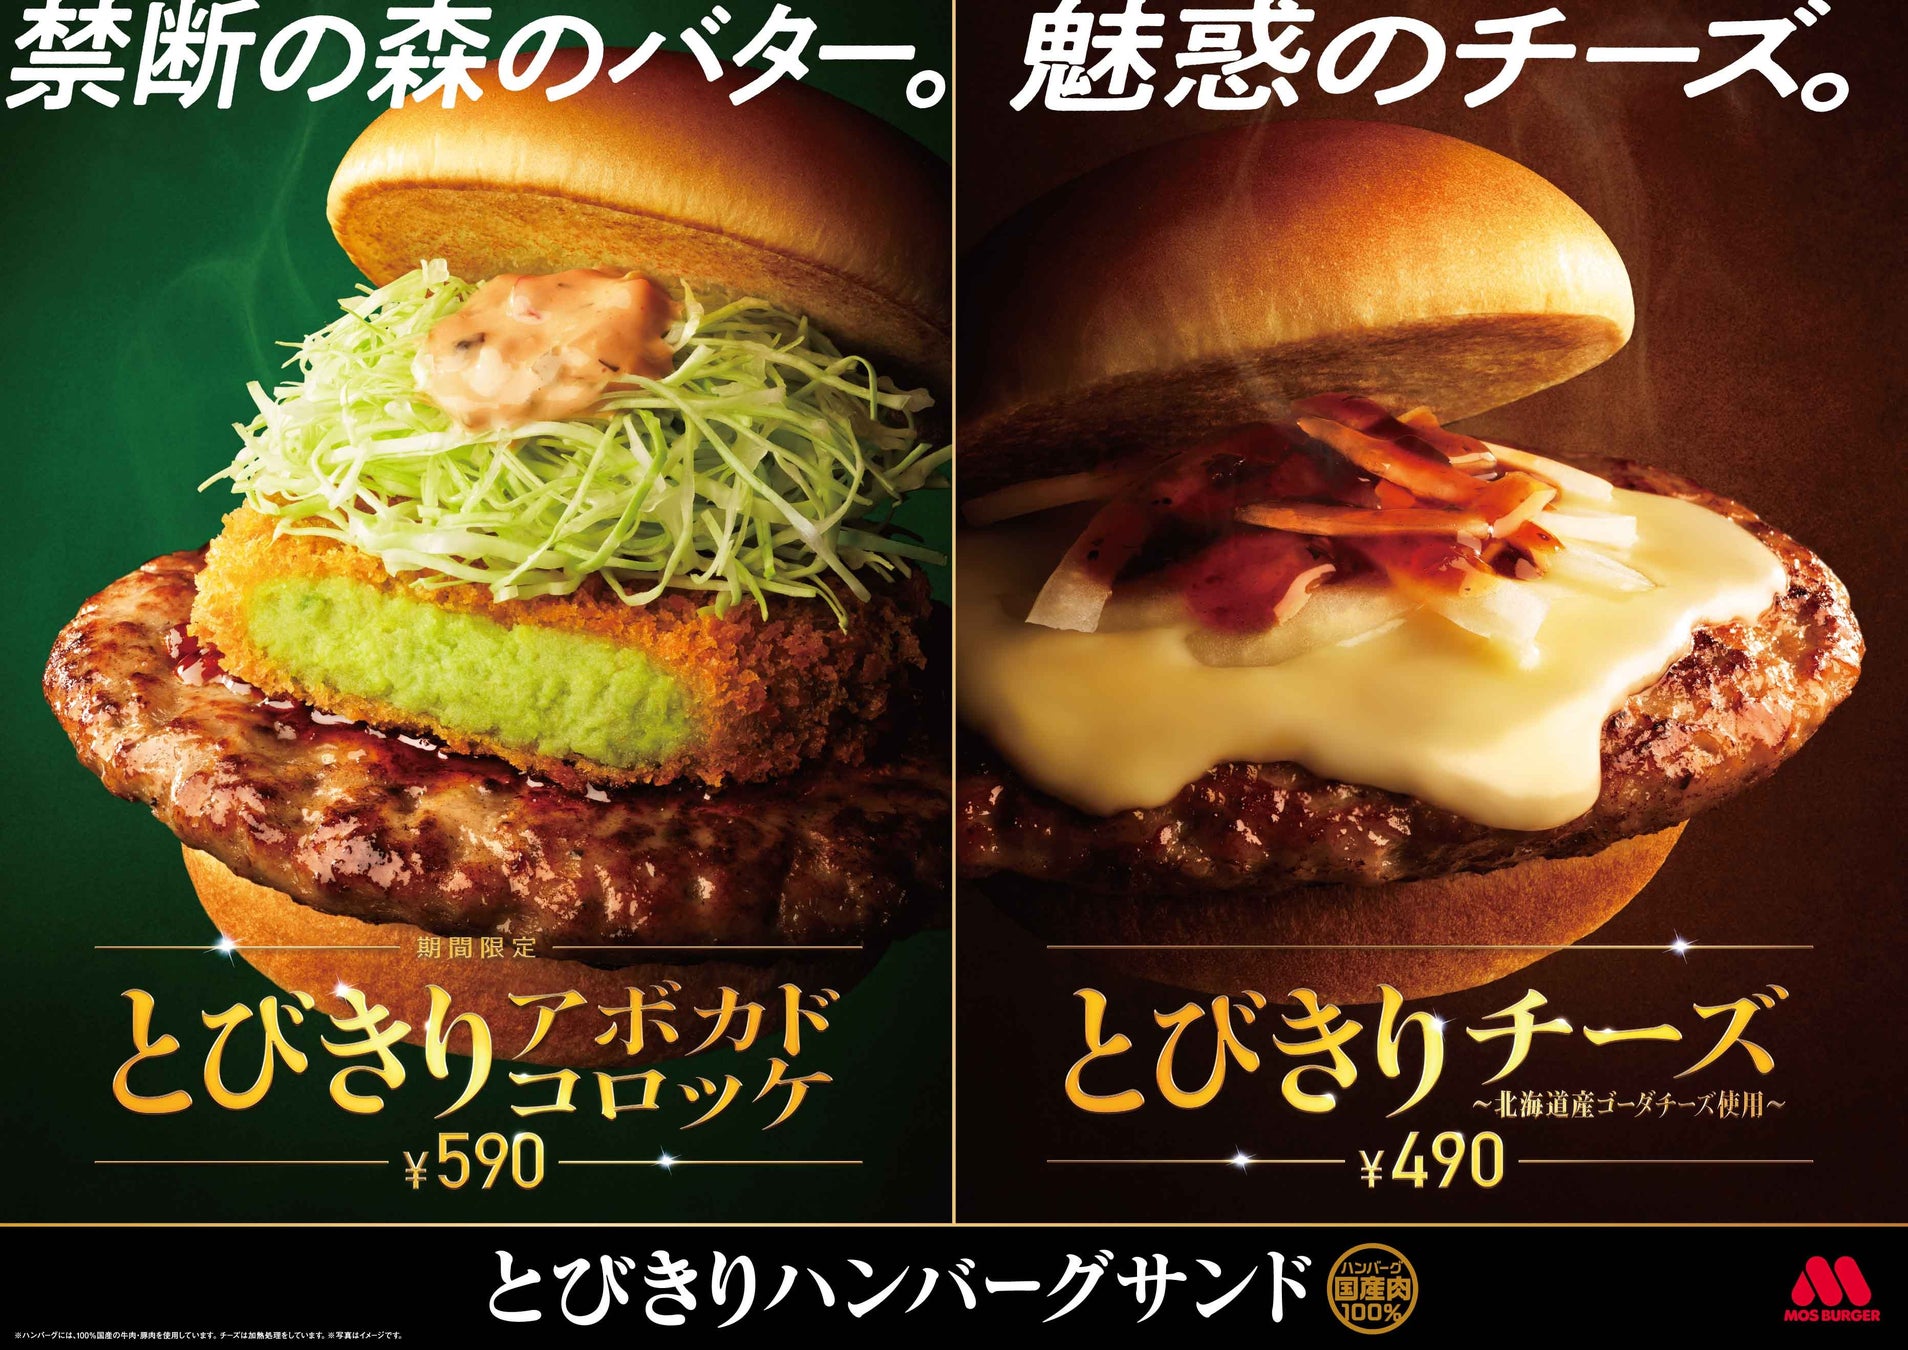 【先着100食無料】台湾まぜそば『禁断のとびら』御徒町店が11月5日OPEN！先着100食無料キャンペーンを実施致します。